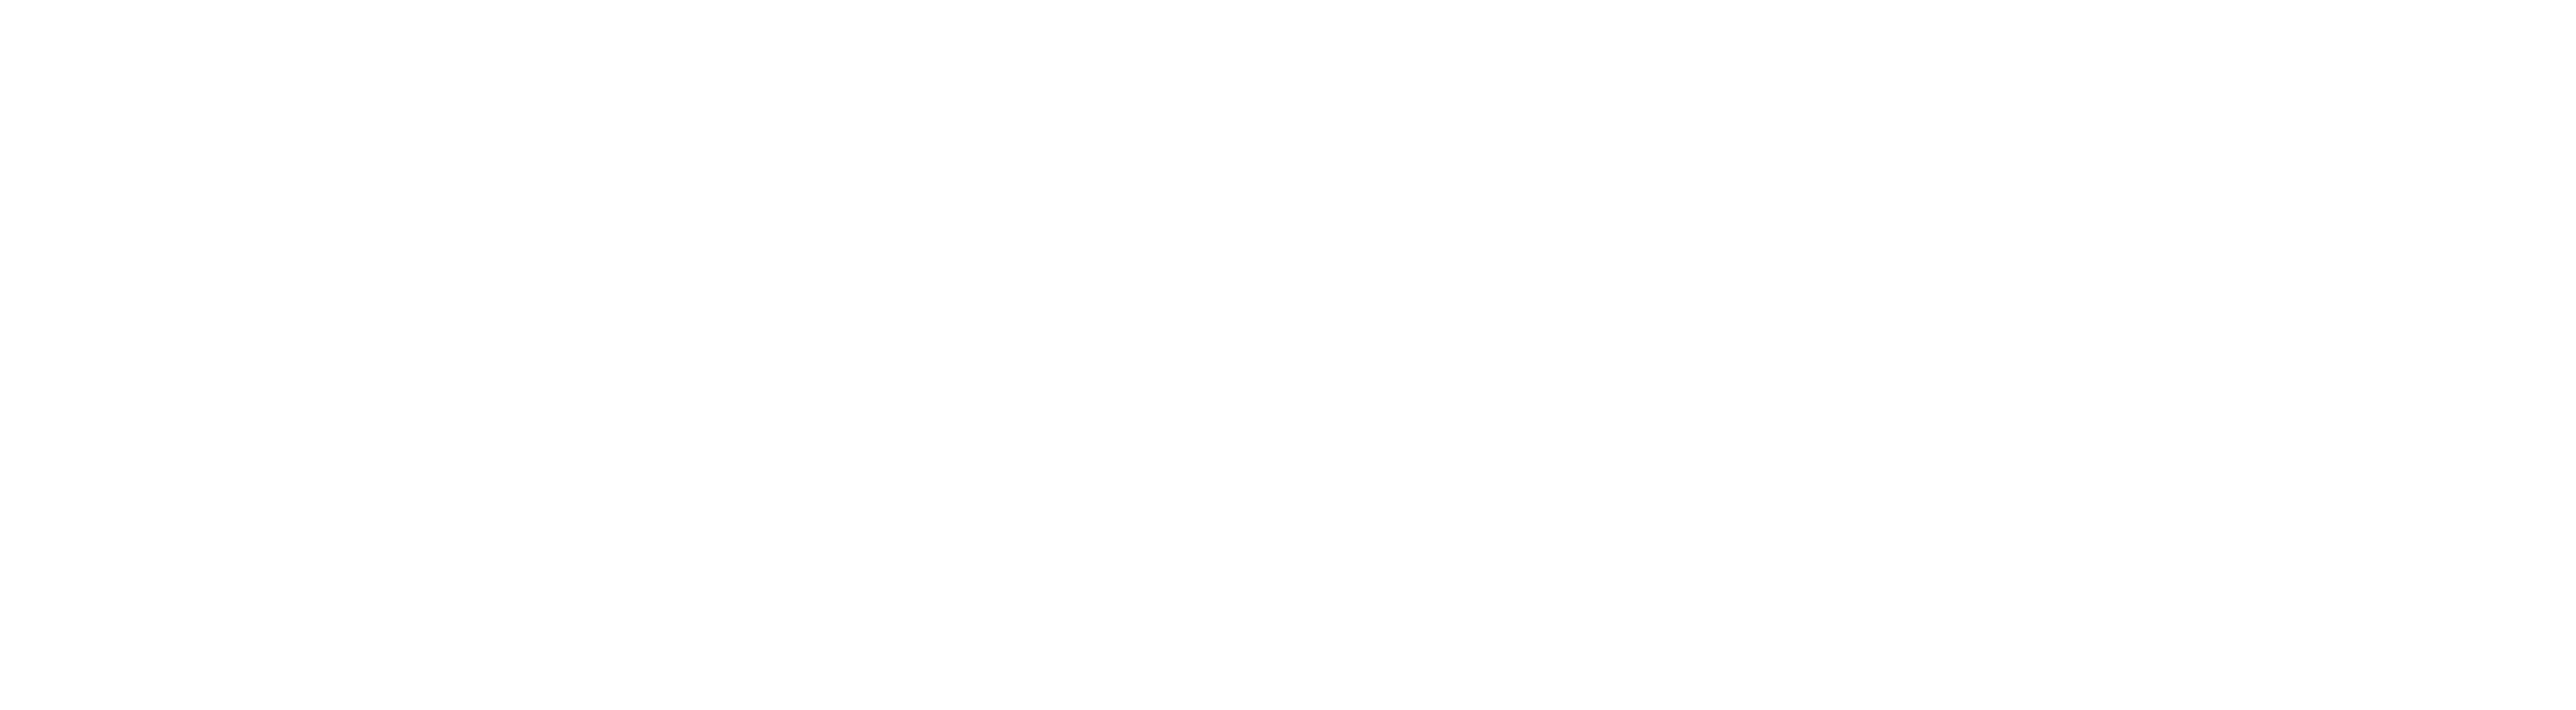 kickstart aalborg logo